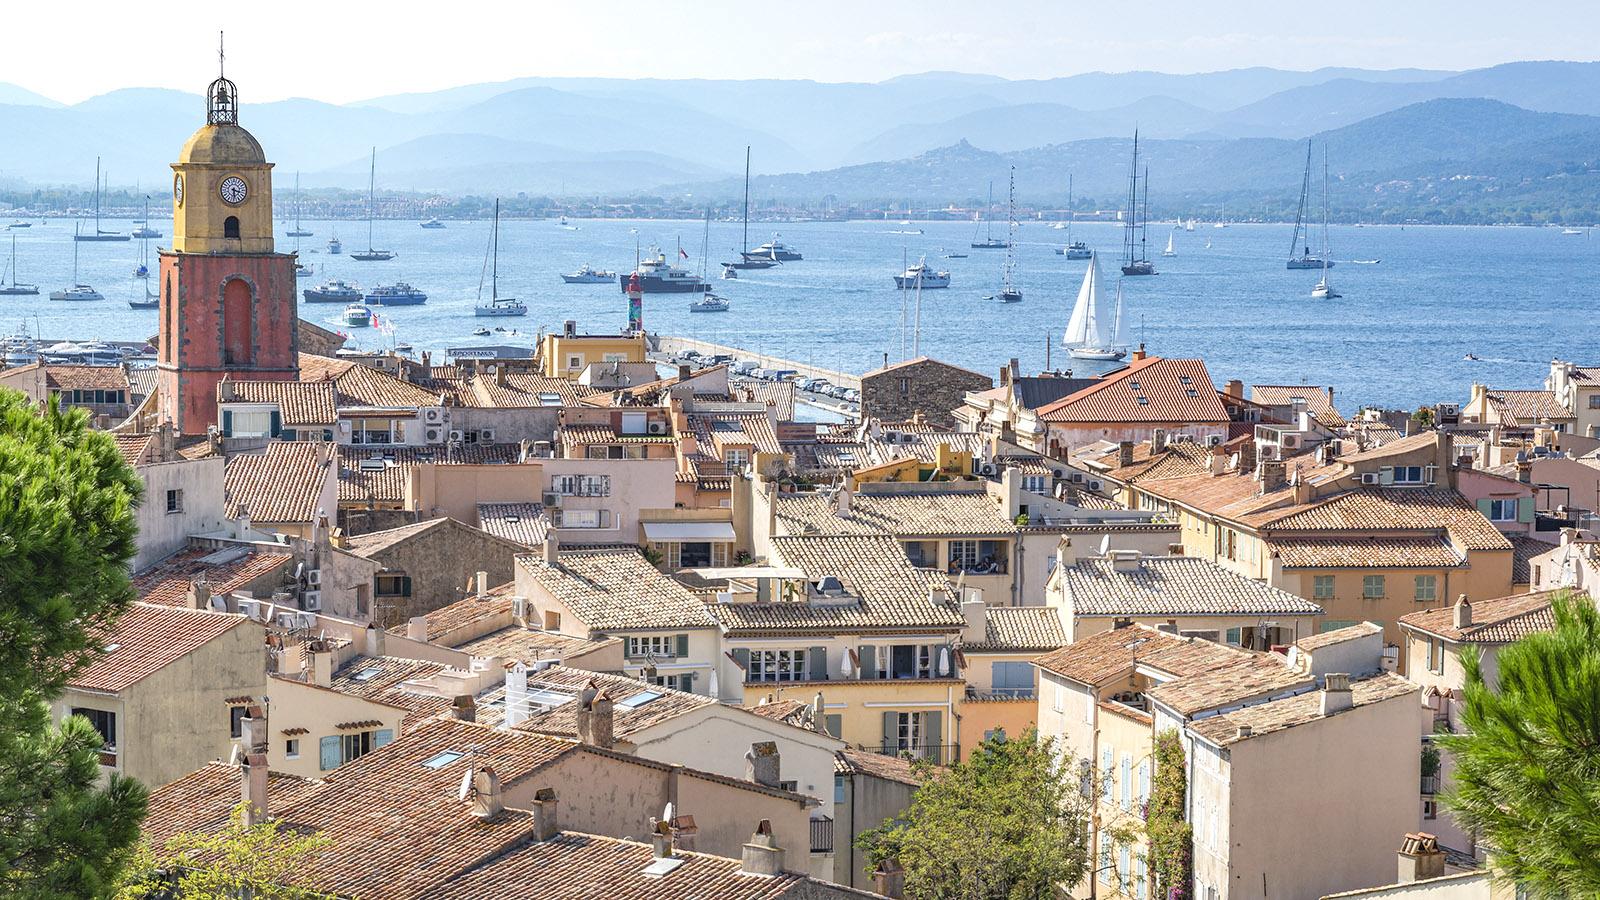 Der Blick auf Saint-Tropez von der Zitadelle. Foto: Hilke Maunder